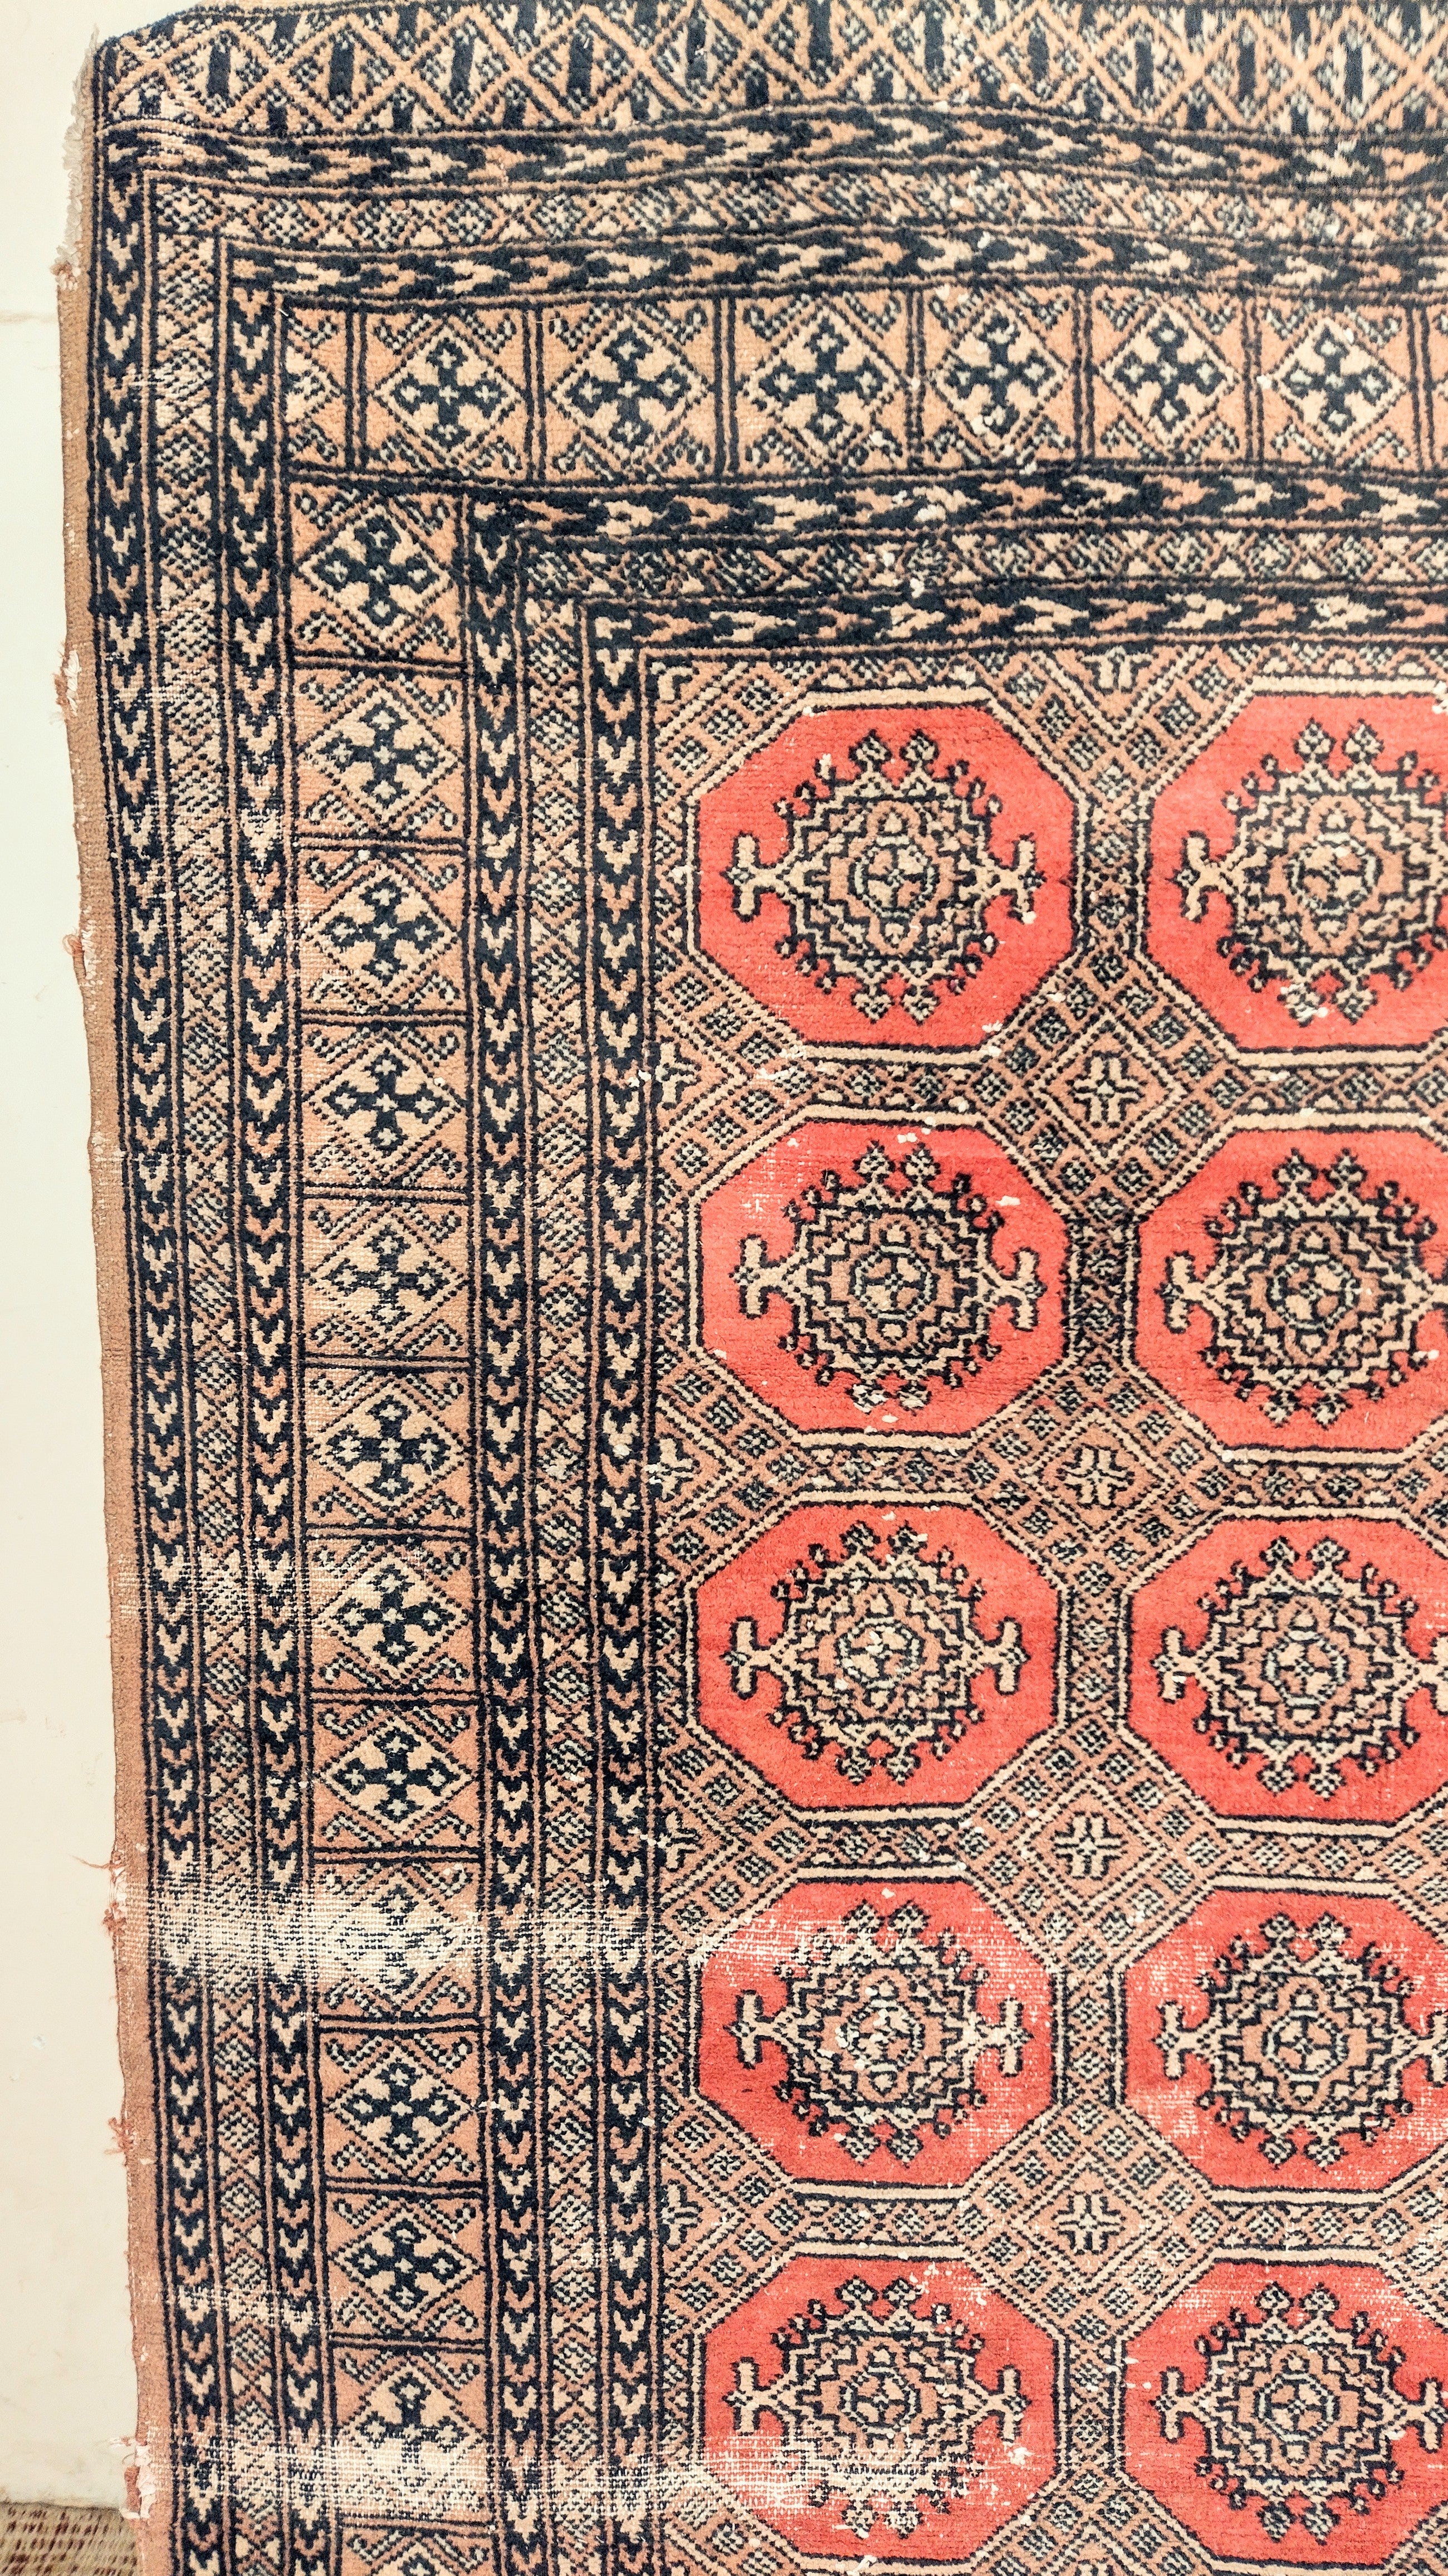 Tapete antigo em lã com padronagem geométrica (240cm X 155cm)